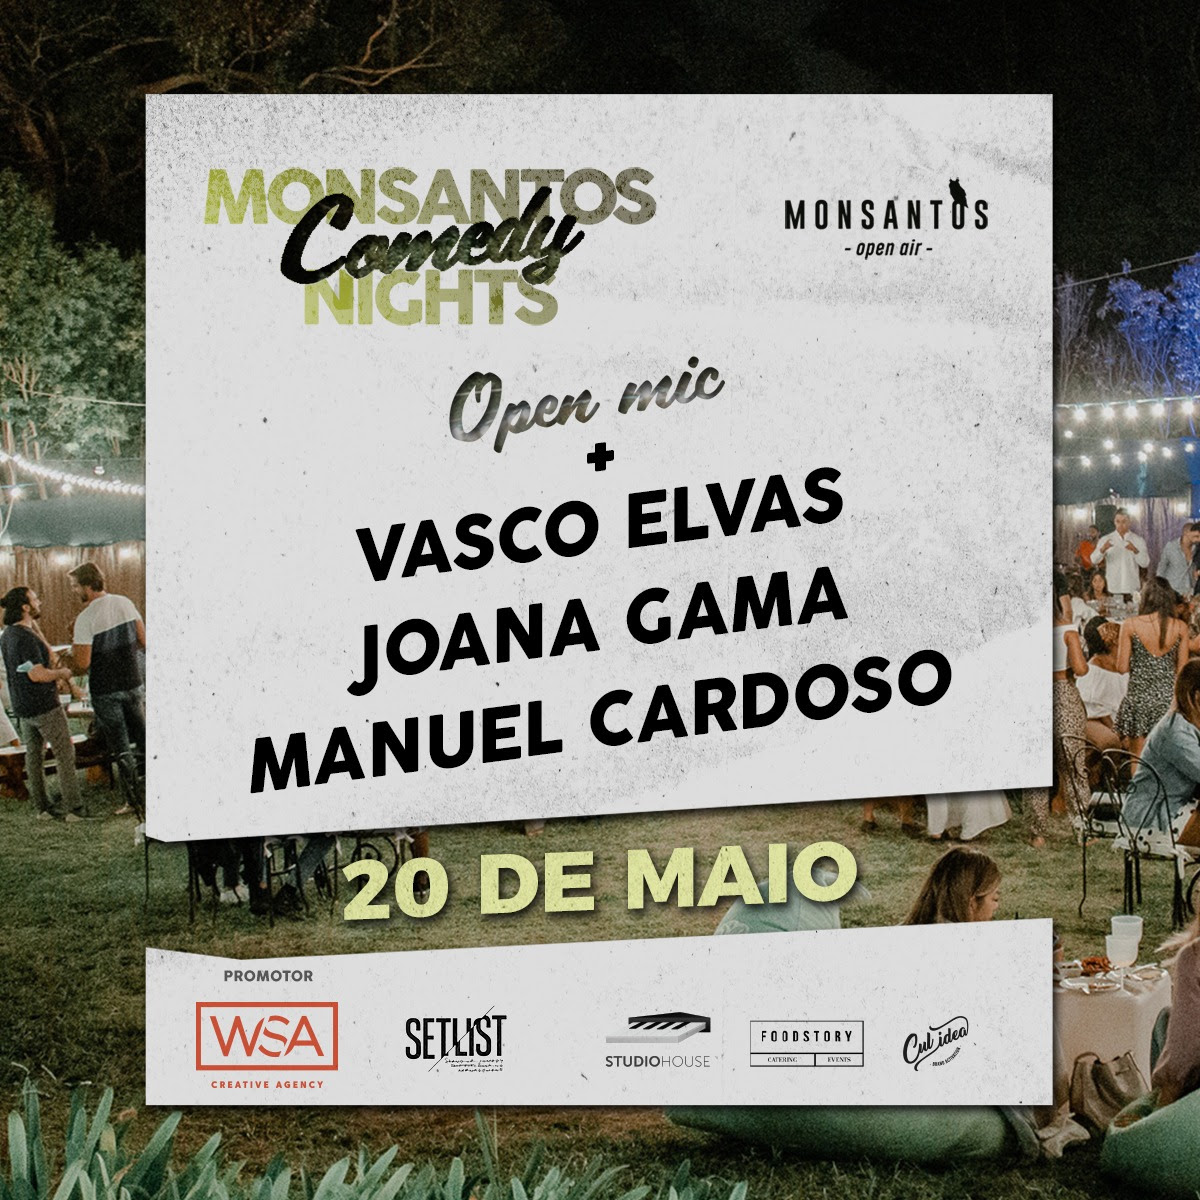 Monsantos Comedy Nights, Monsantos Comedy Nights começam amanhã com Manuel Cardoso, Joana Gama e Vasco Elvas